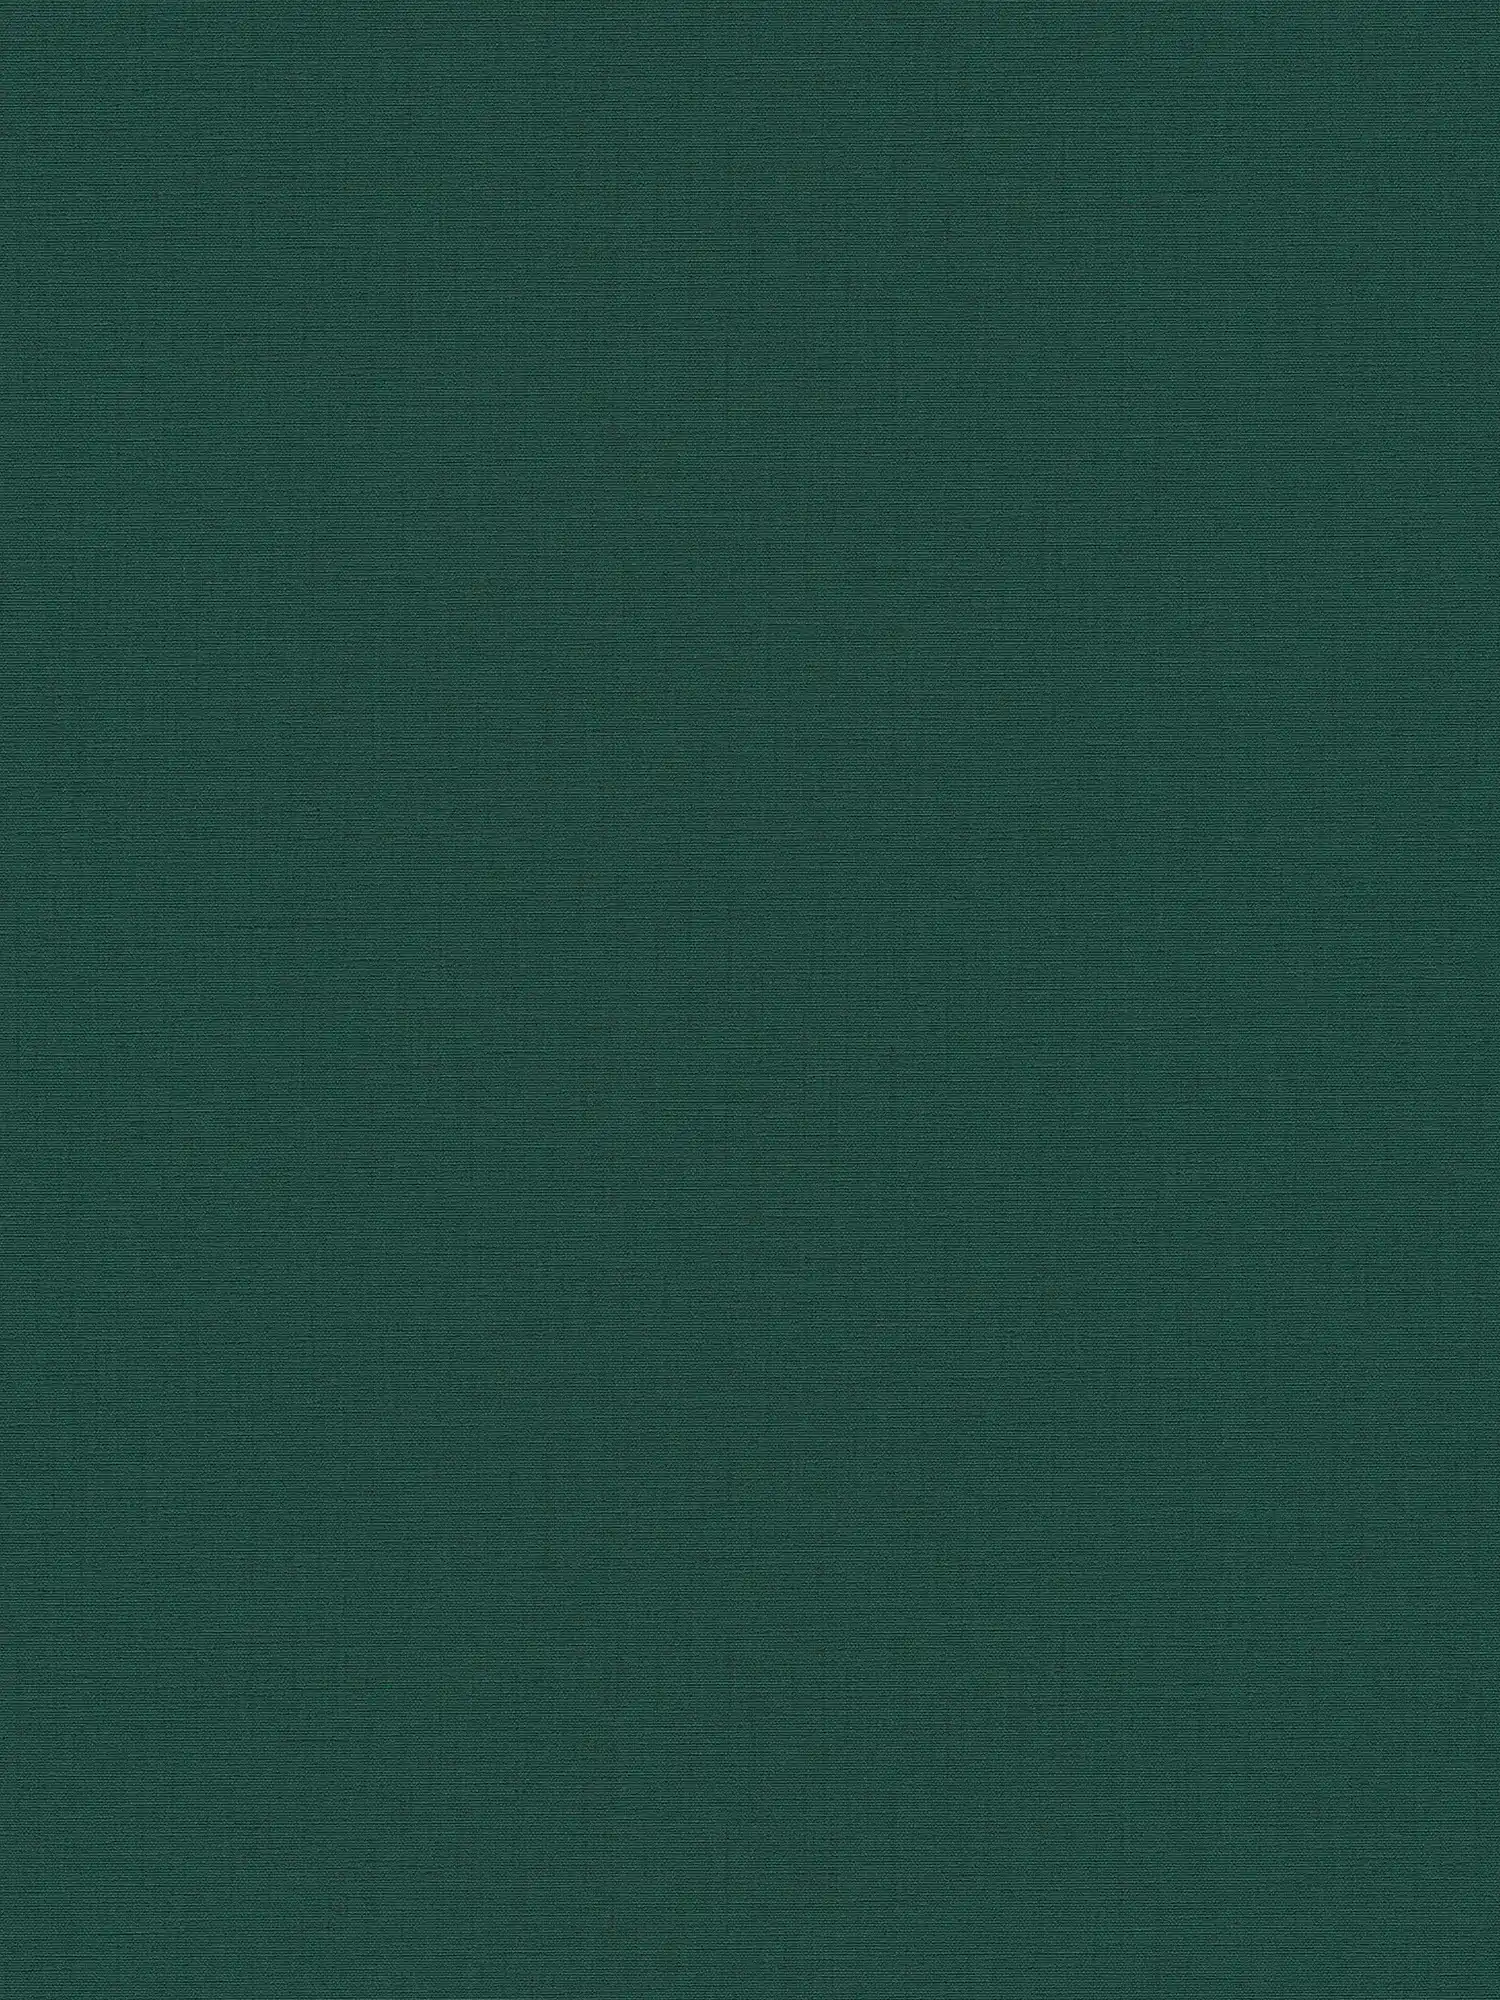         Fir green non-woven wallpaper with textile texture - green
    